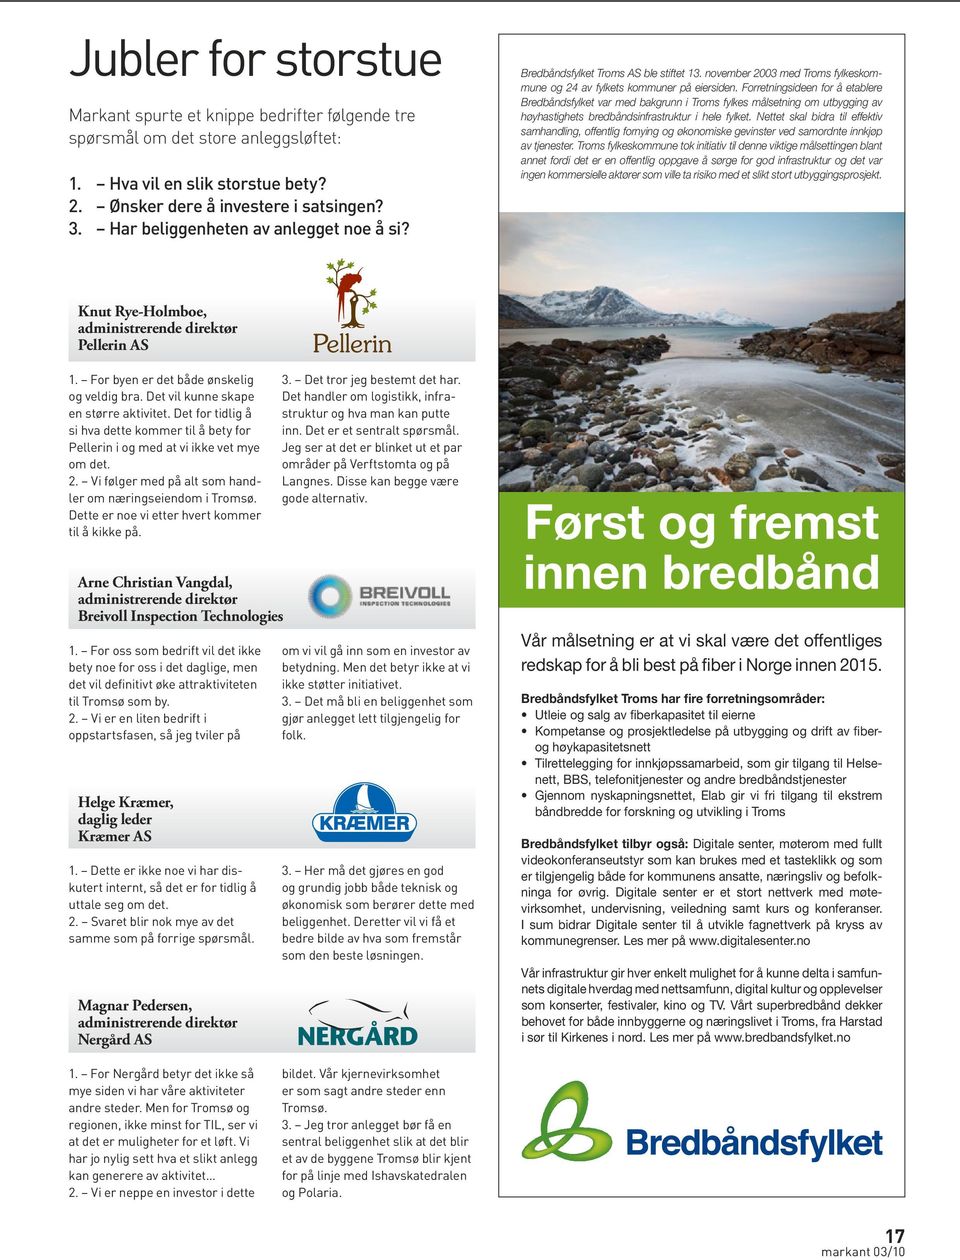 Forretningsideen for å etablere Bredbåndsfylket var med bakgrunn i Troms fylkes målsetning om utbygging av høyhastighets bredbåndsinfrastruktur i hele fylket.